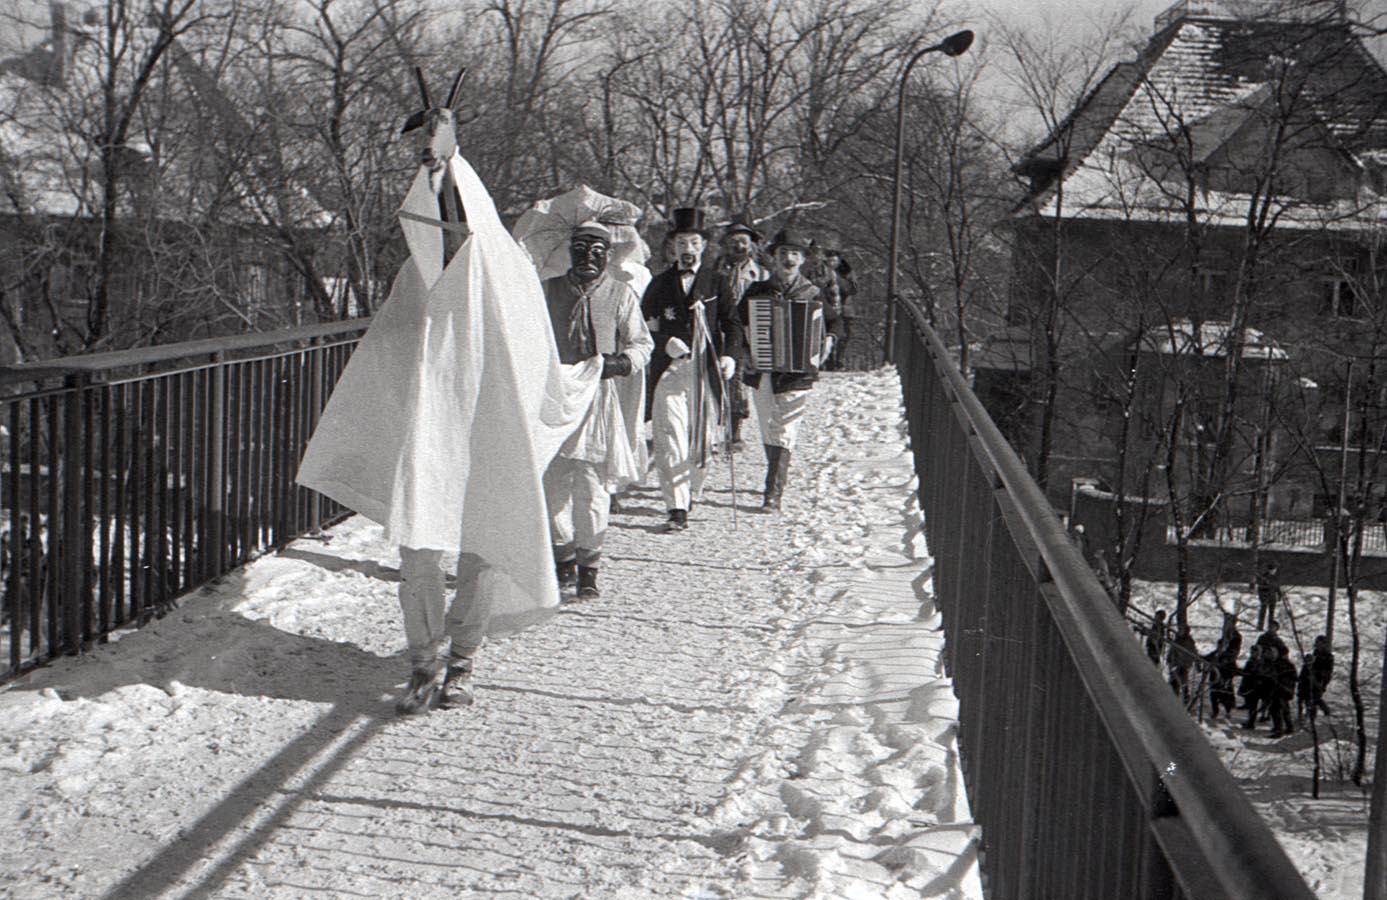 Fotografia czarno-biała przedstawiająca grupę przebranych osób idących ośnieżonym mostkiem. Na czele korowodu widoczny kozioł, w tle widać osobę grającą na akordeonie. Na dalszych planach dostrzec można także budynki, przechodniów i drzewa.